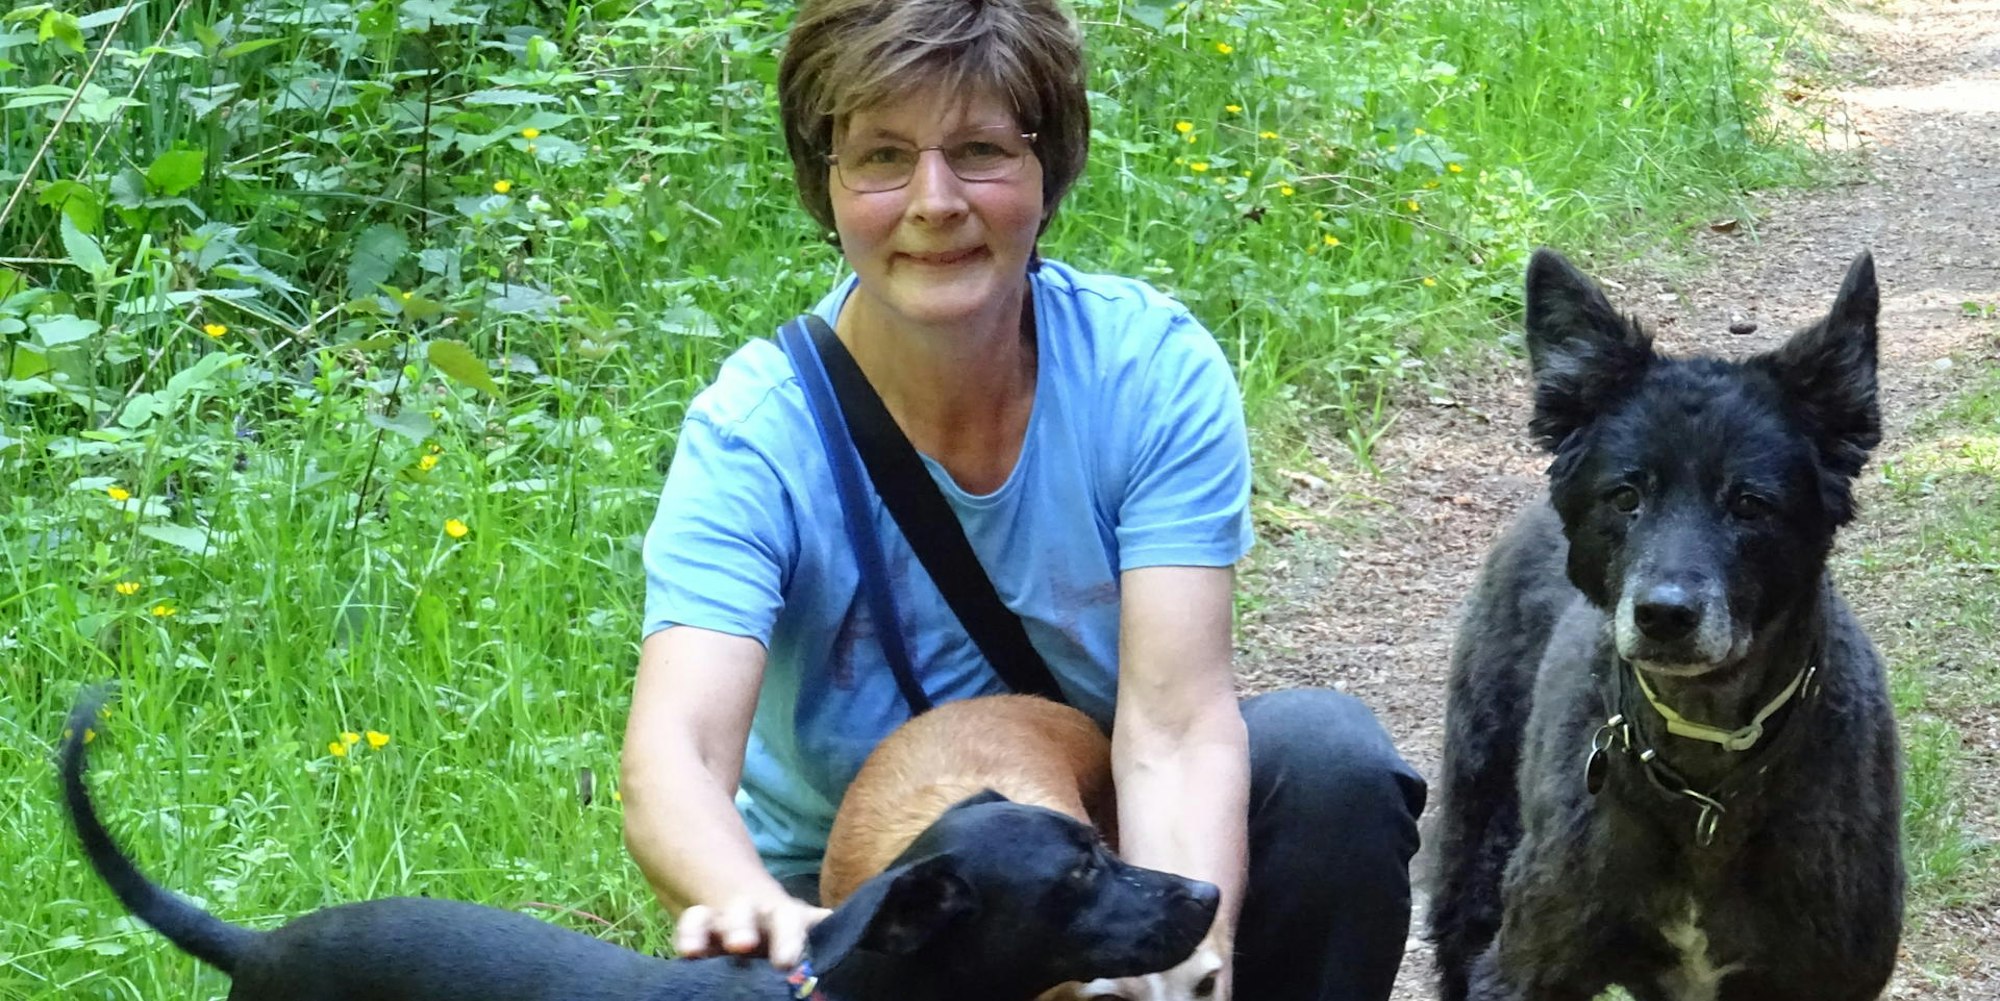 Zuzana Podraska liebt ihre Hunde, rechts ist Therapiehund Ivo zu sehen.